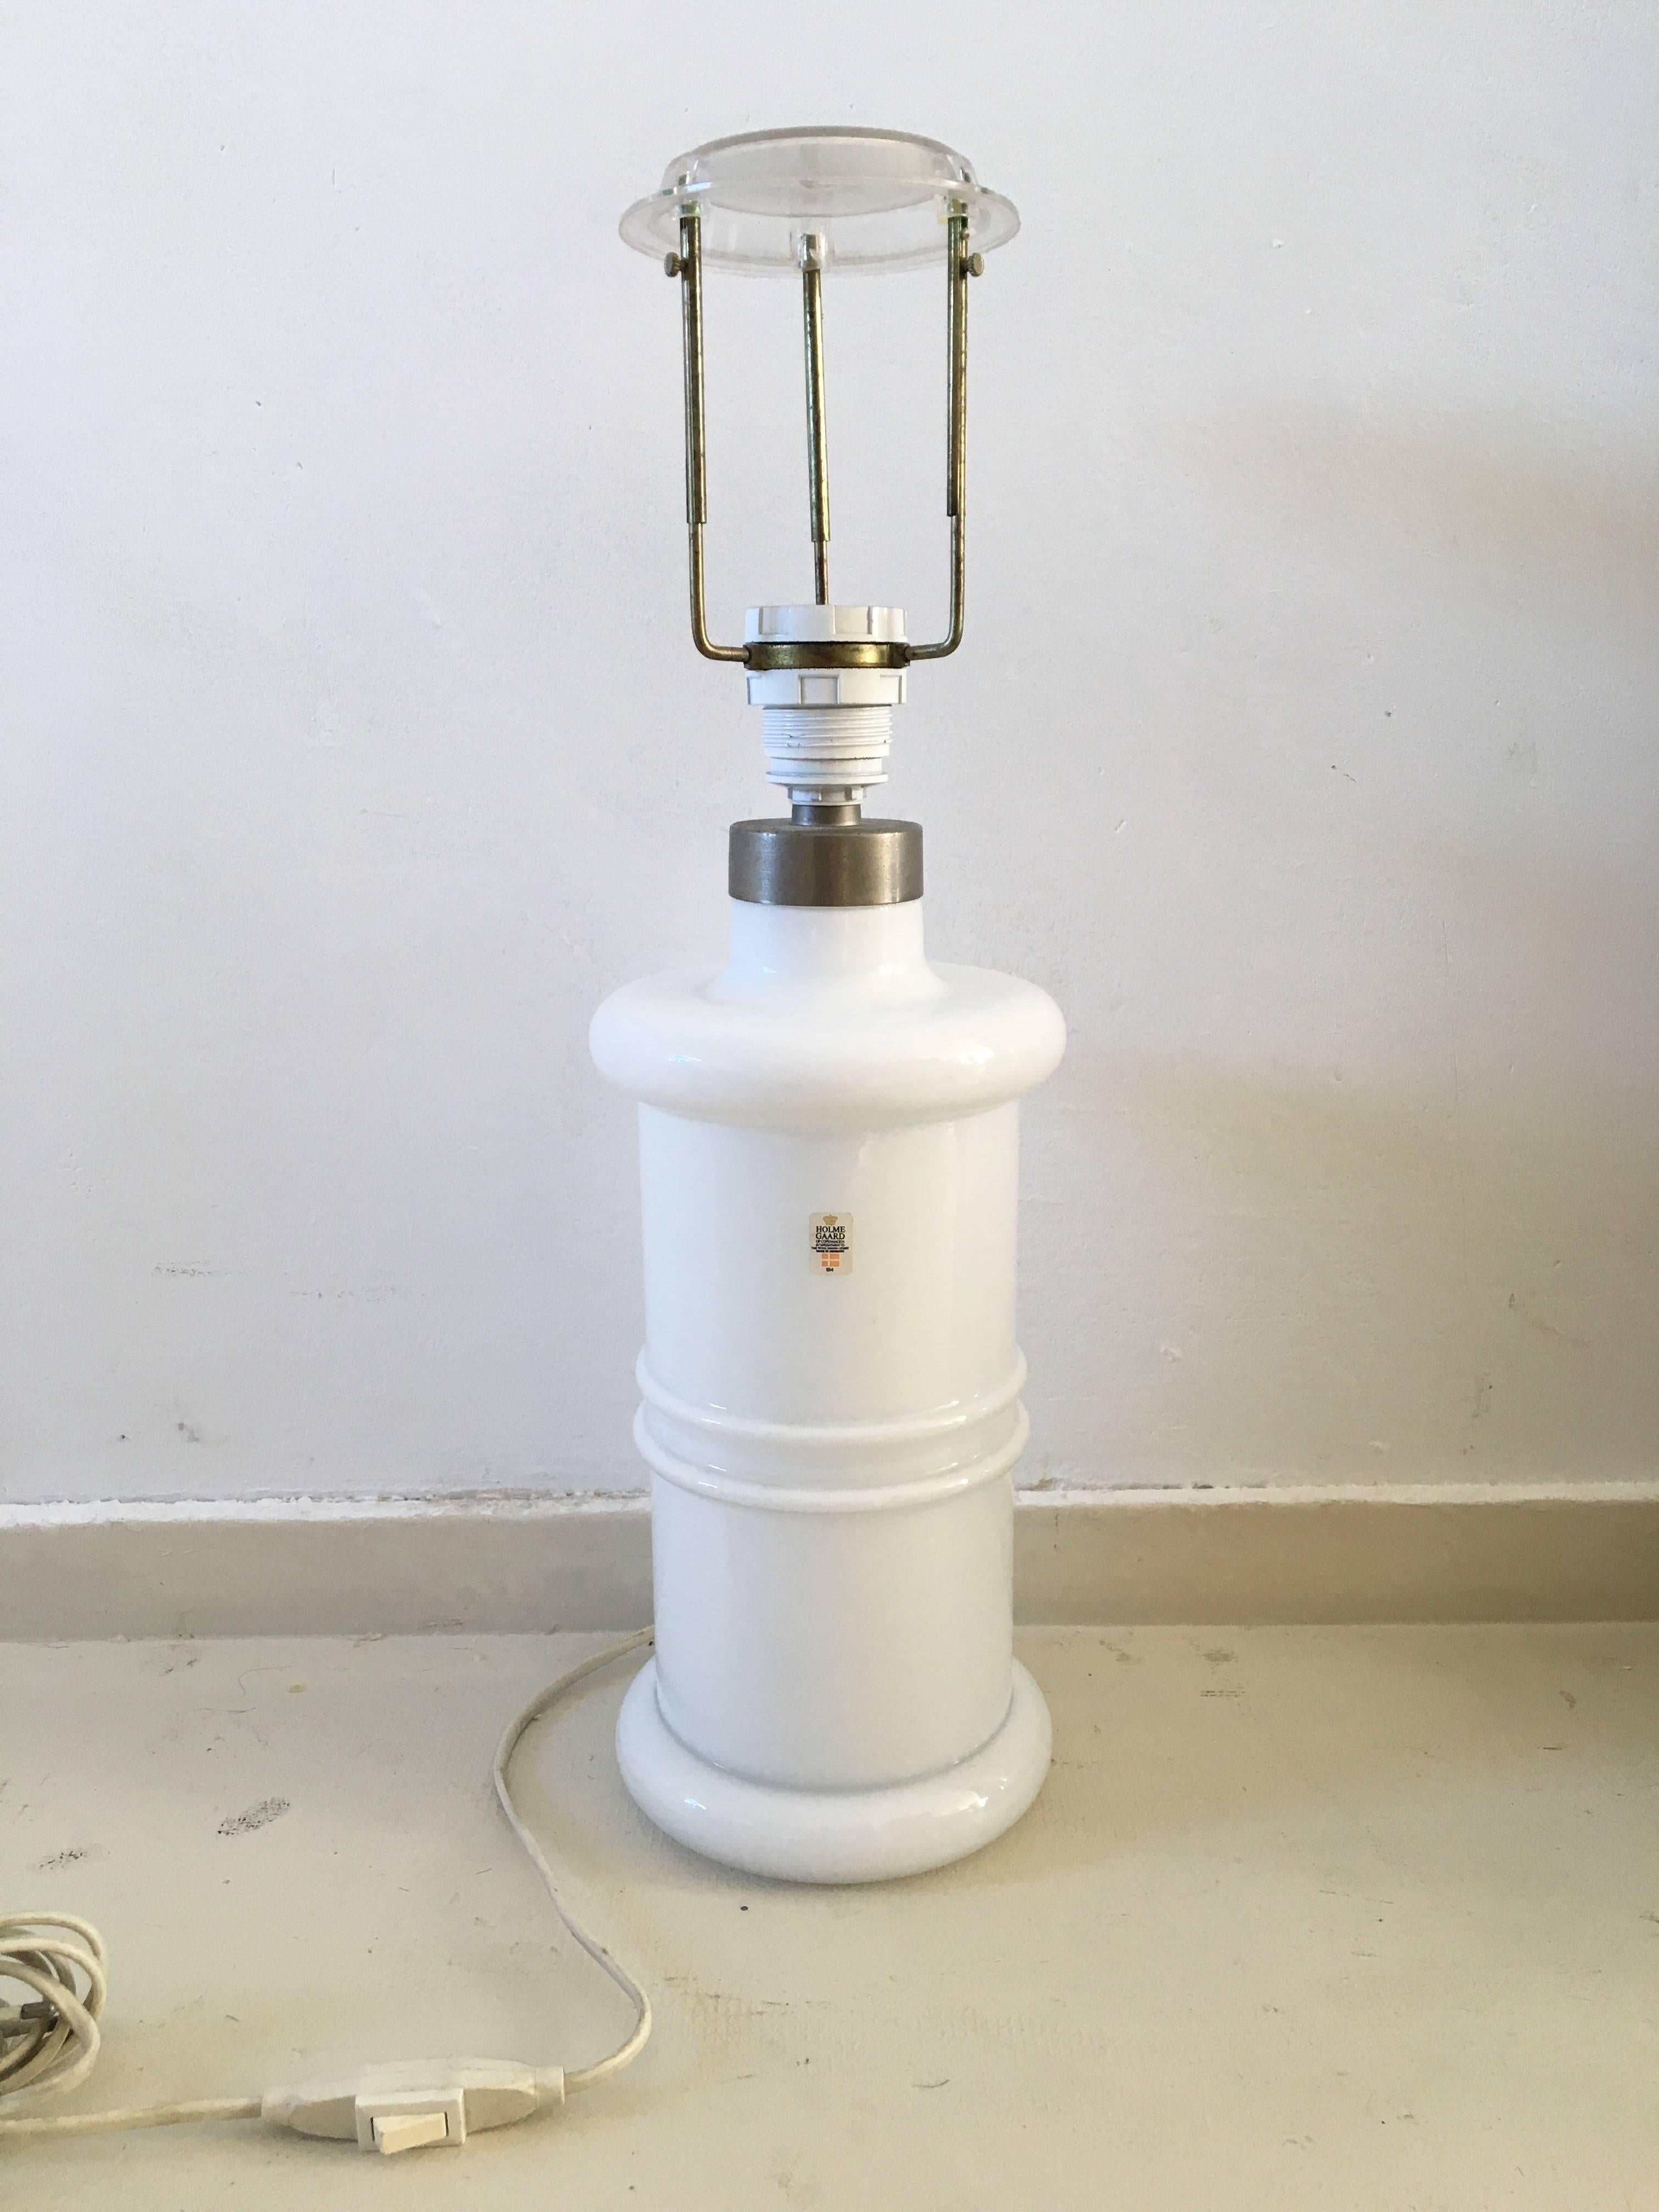 Diese große Phamakistenlampe aus Opalglas wurde 1981 von Sidse Werner für Holmegaard entworfen. Der Schirm dieser wunderschönen dänischen Designlampe kann in der Höhe verstellt werden. Die Lampe war mit einem Aufkleber des Herstellers versehen. Max.